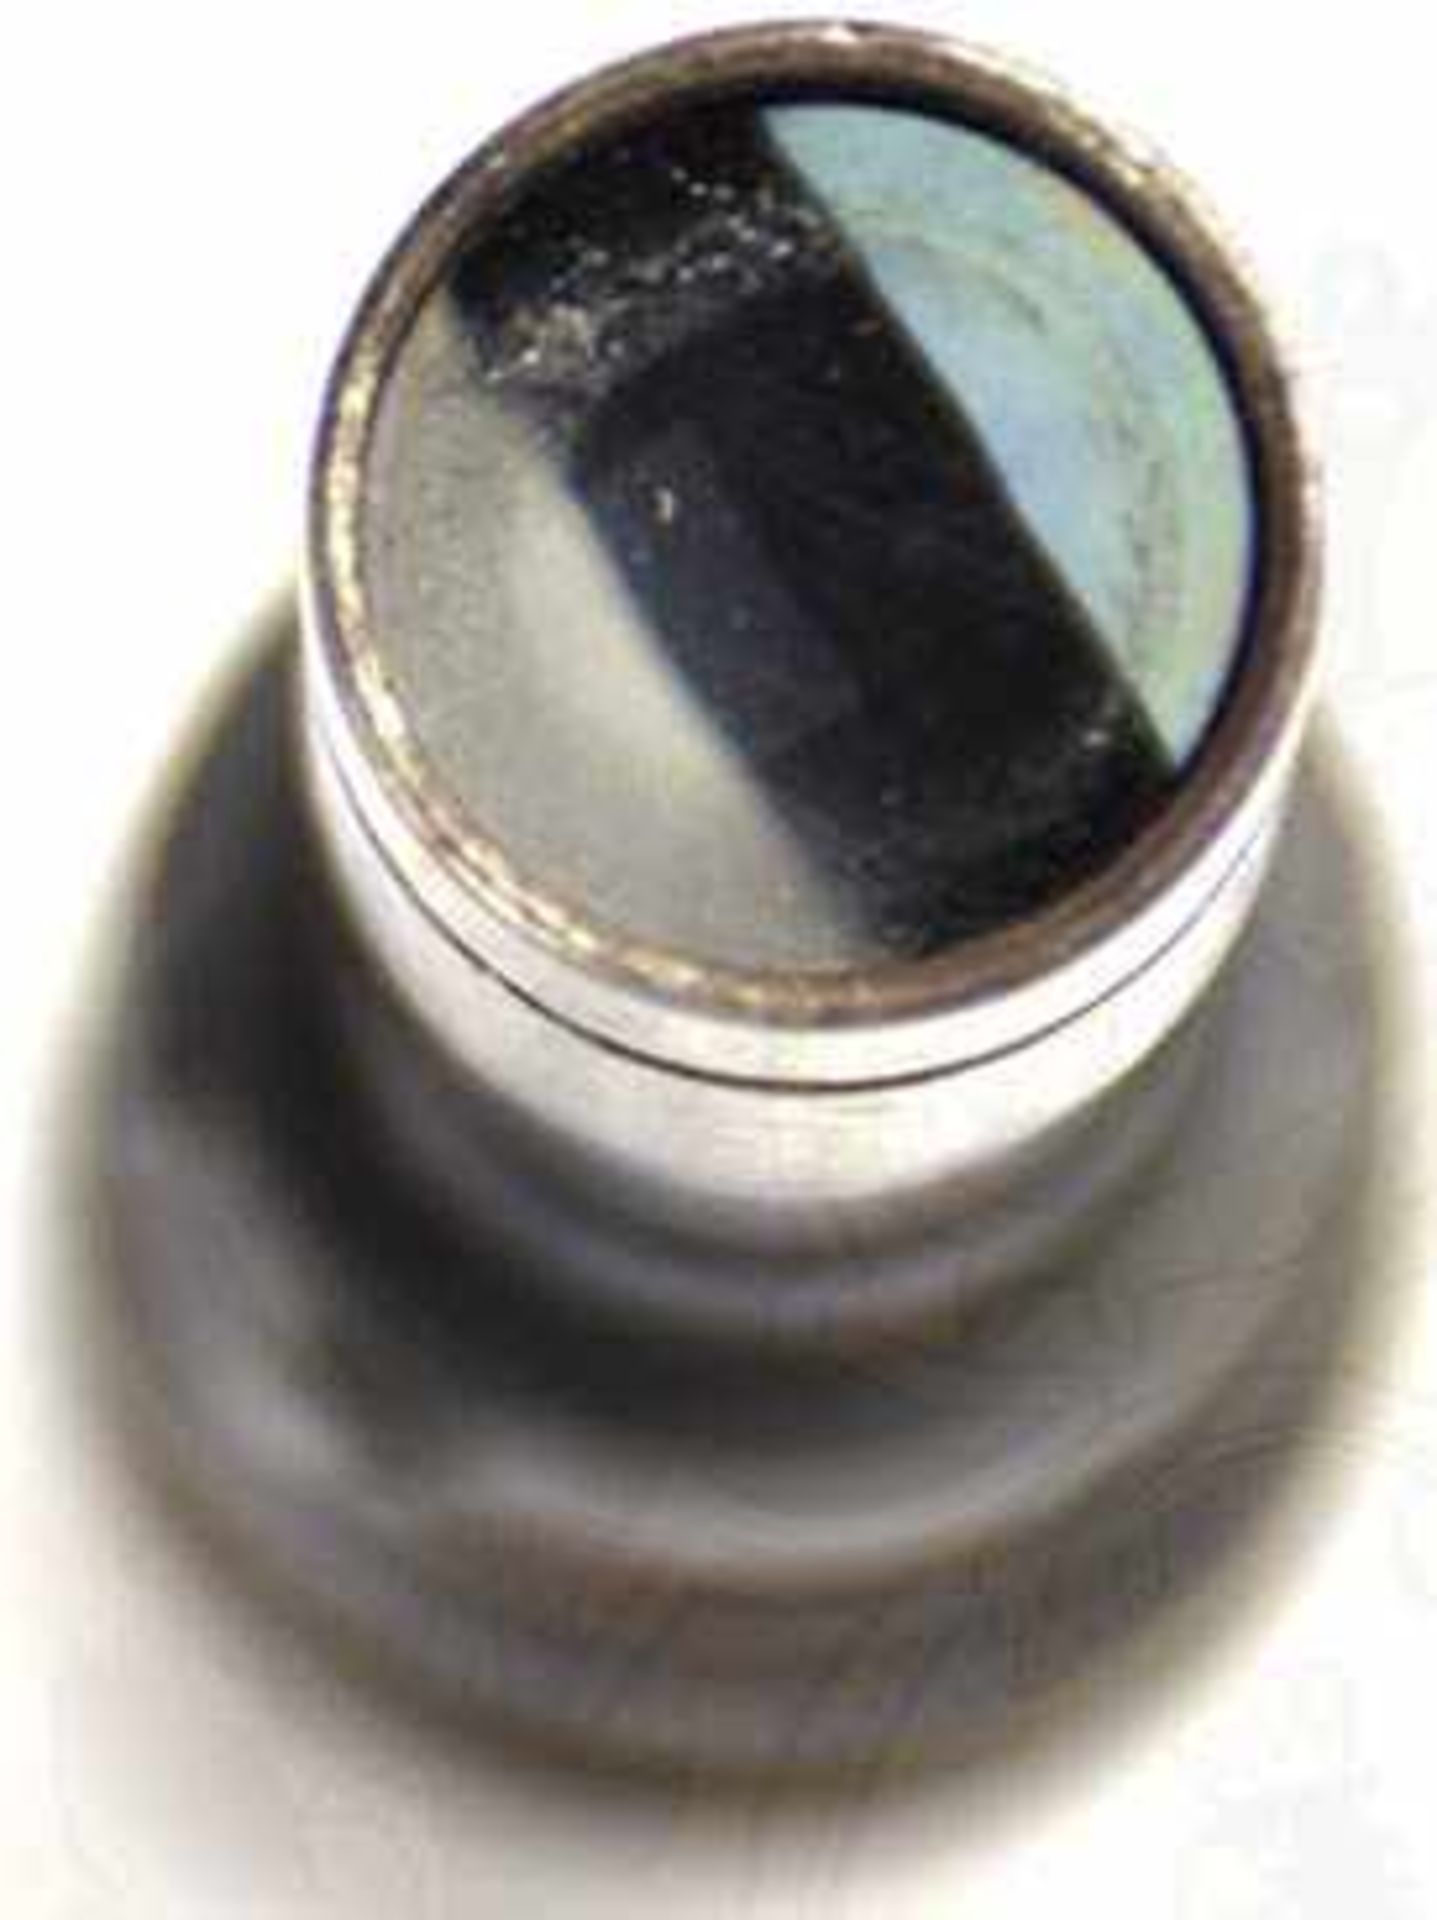 ZIELFERNROHR ZF 41/1, brüniertes Eisen, Vergrößerung ca. 3-fach, Optik klar, L. 14,8 cm - Bild 4 aus 4